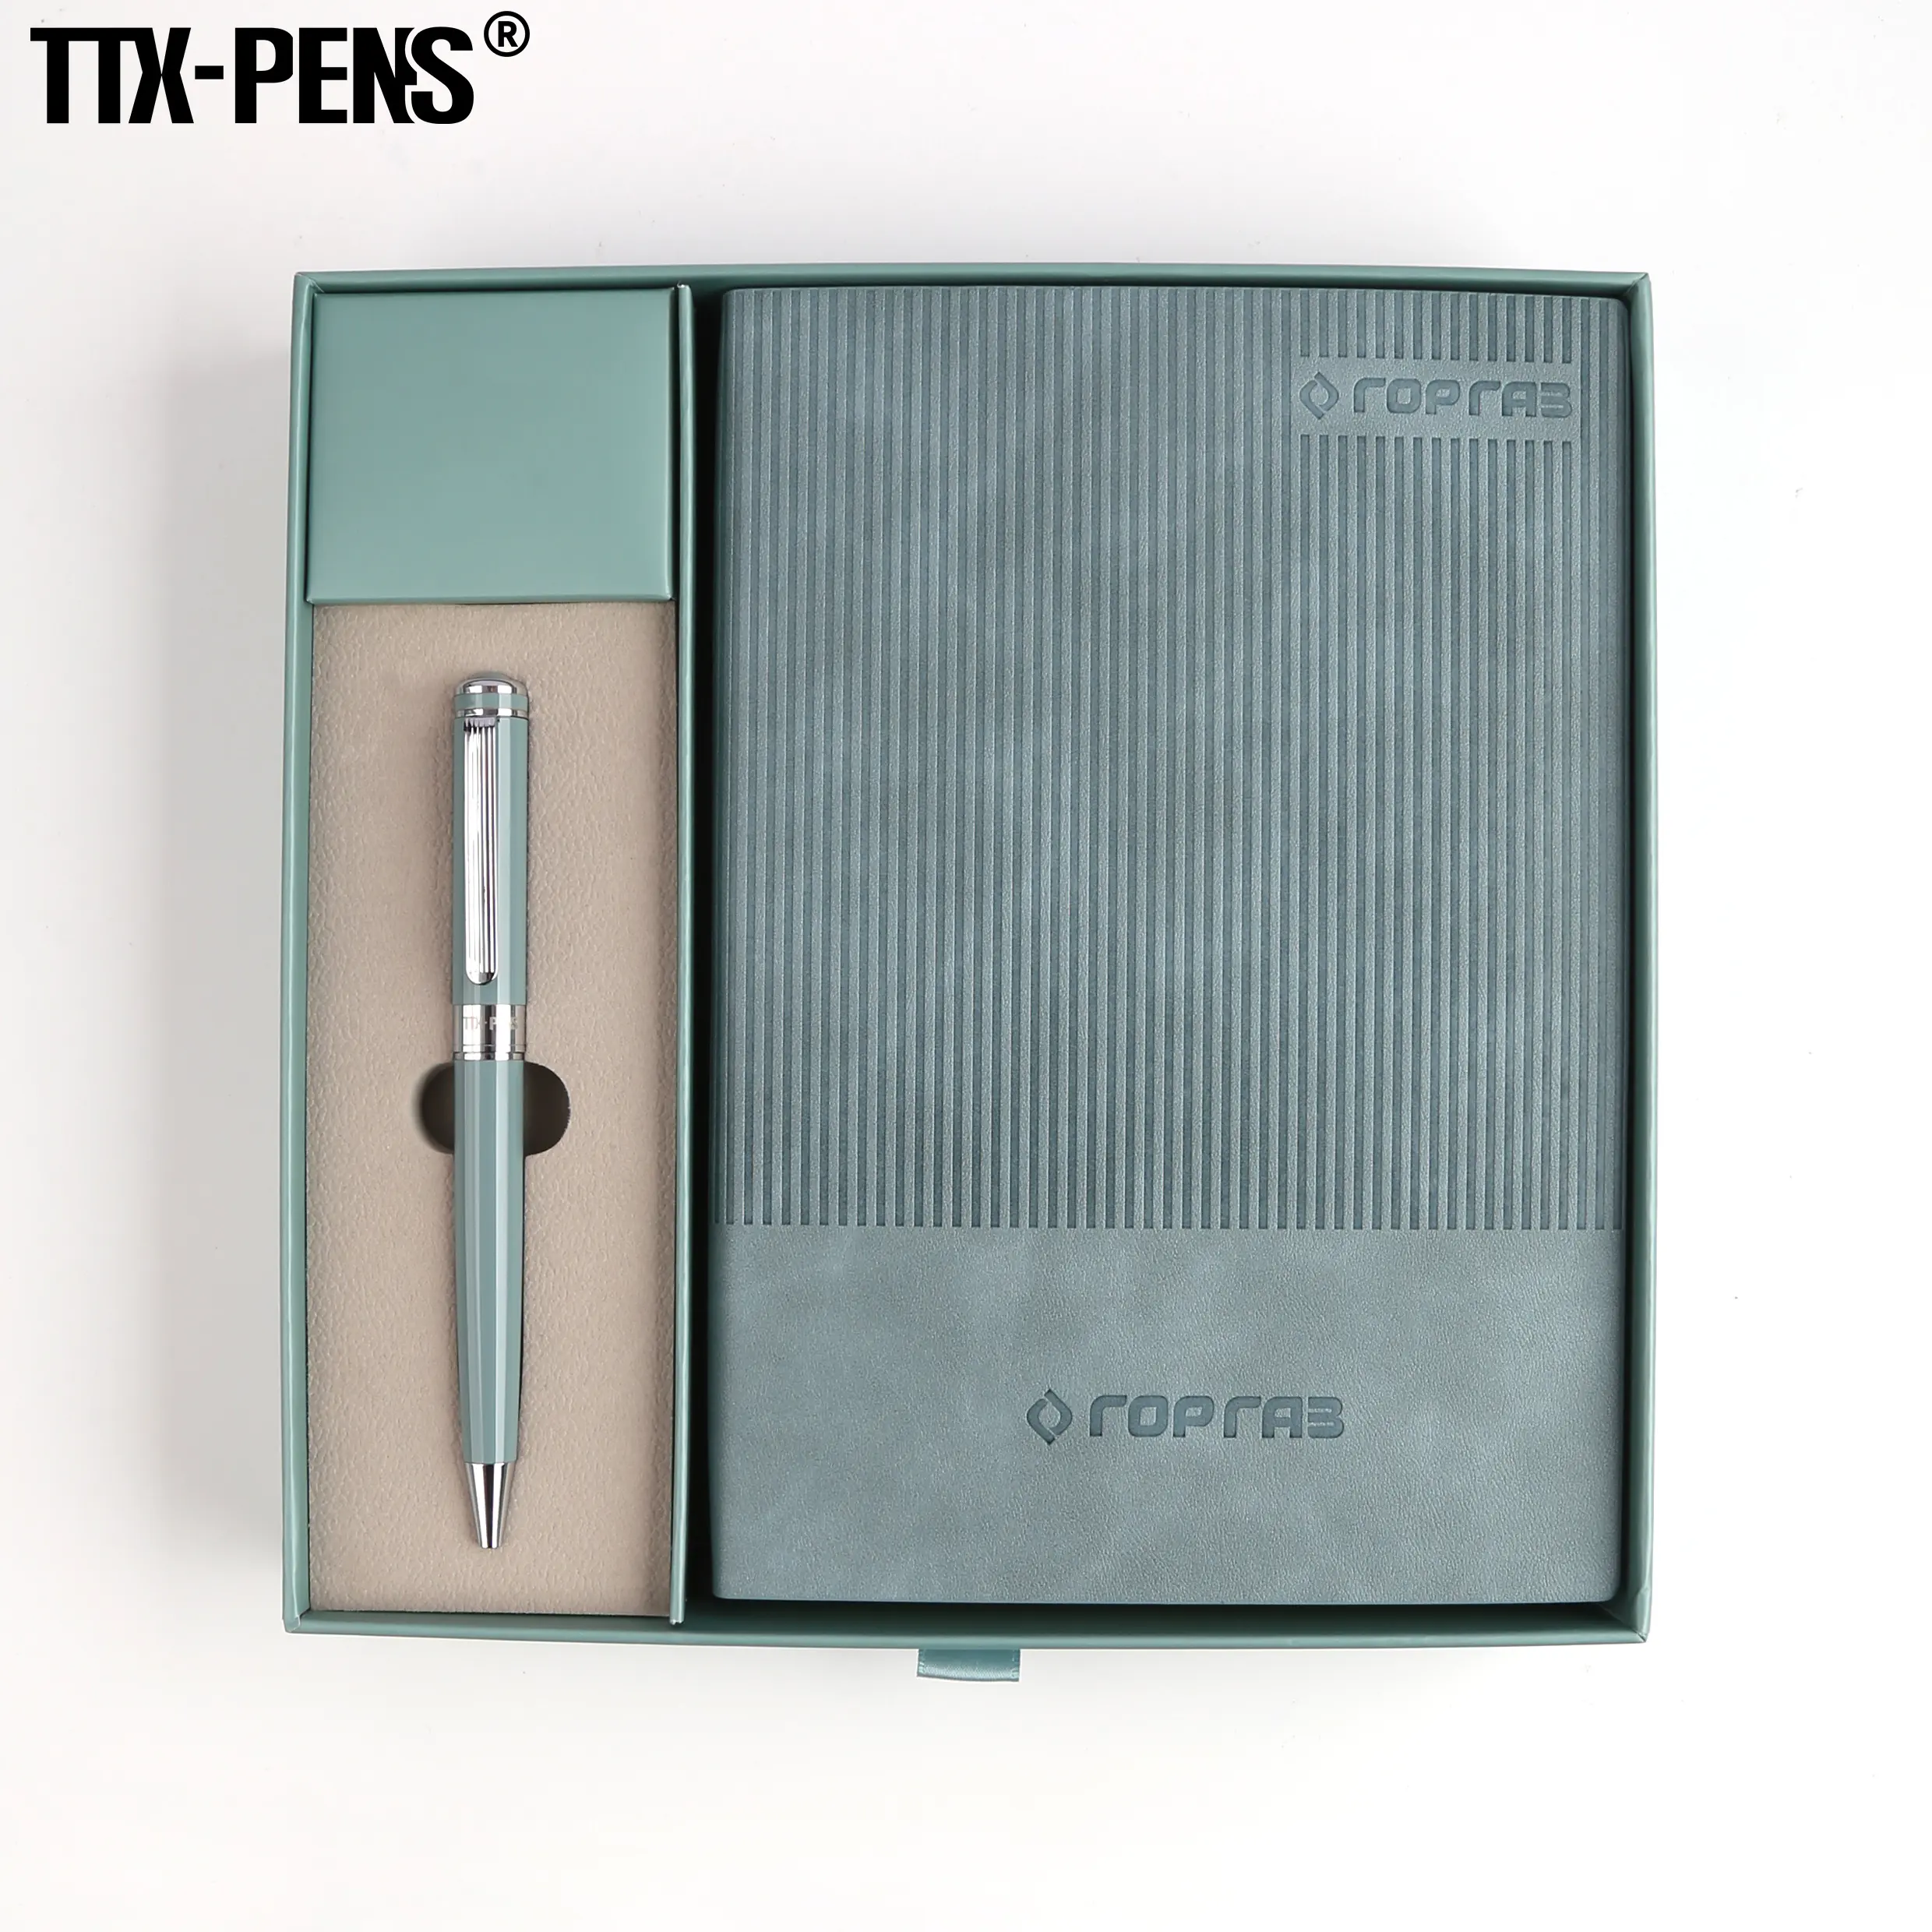 TTX promosyon lüks hediyeler öğeleri dizüstü iş hediye kalem ile özelleştirilebilir dizüstü hediye seti